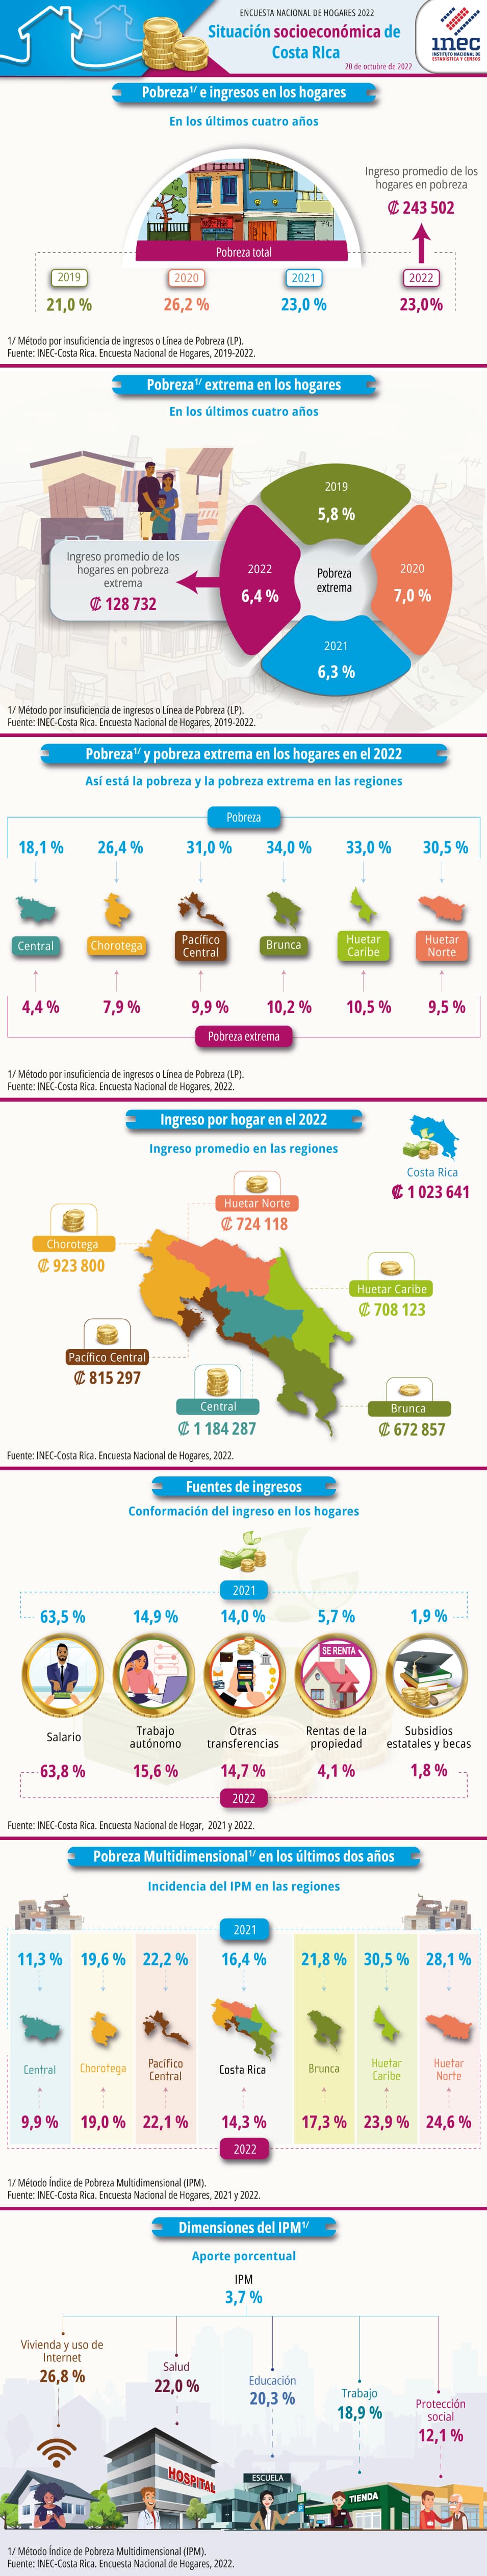 Infografía sobre la situación socioeconómica de los hogares de Costa Rica en 2022, según la Encuesta Nacional de Hogares.